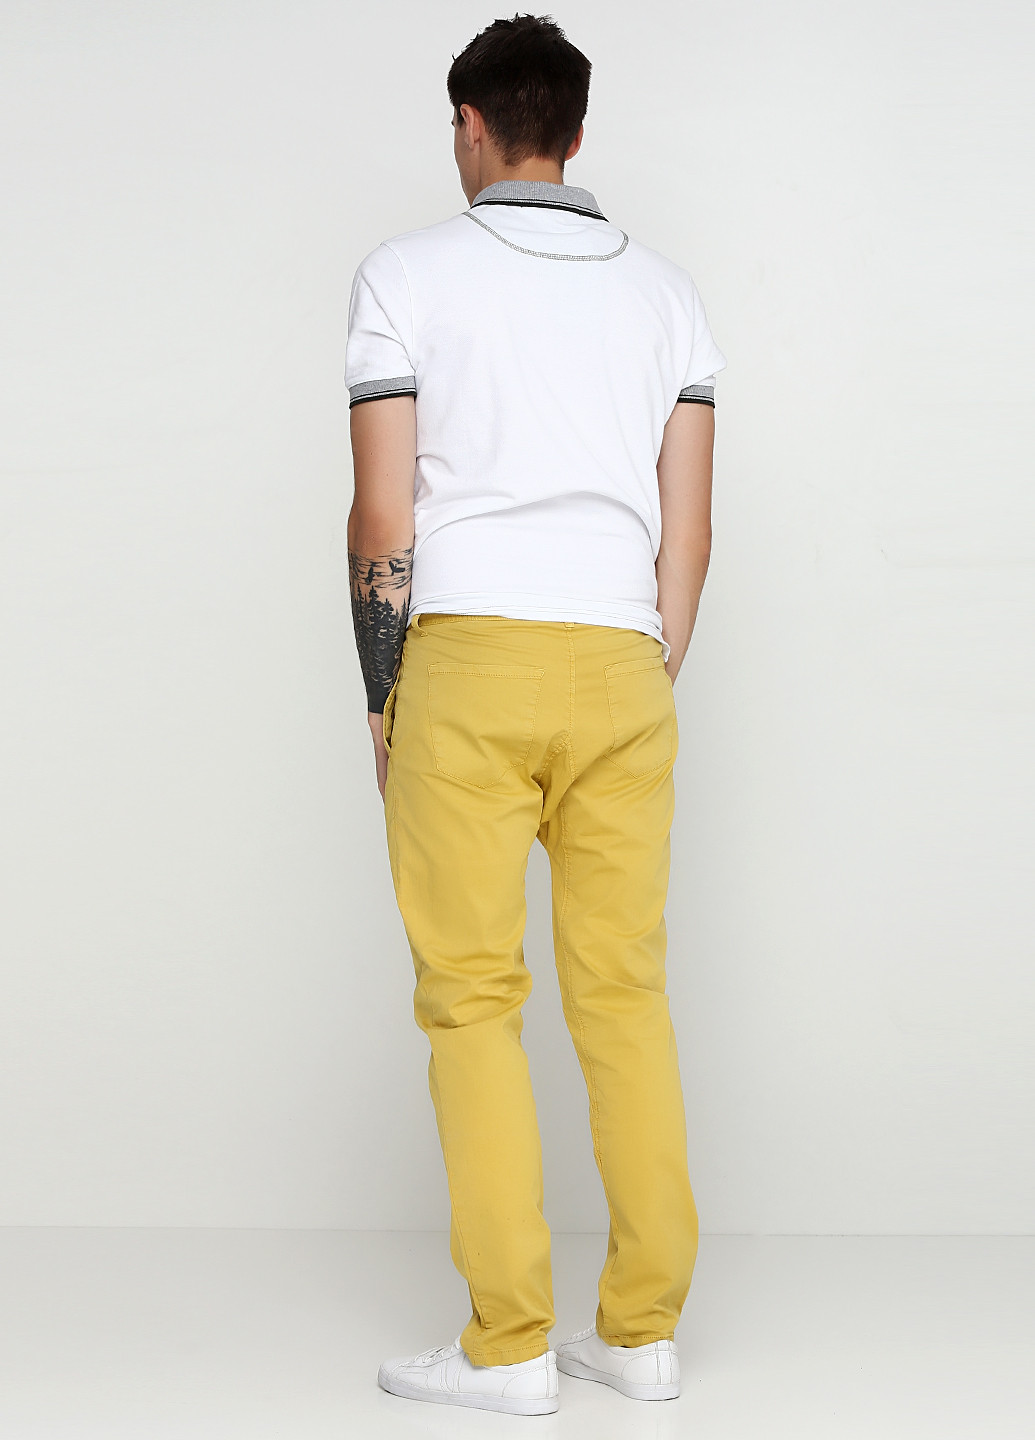 Желтые кэжуал демисезонные зауженные брюки Daggs